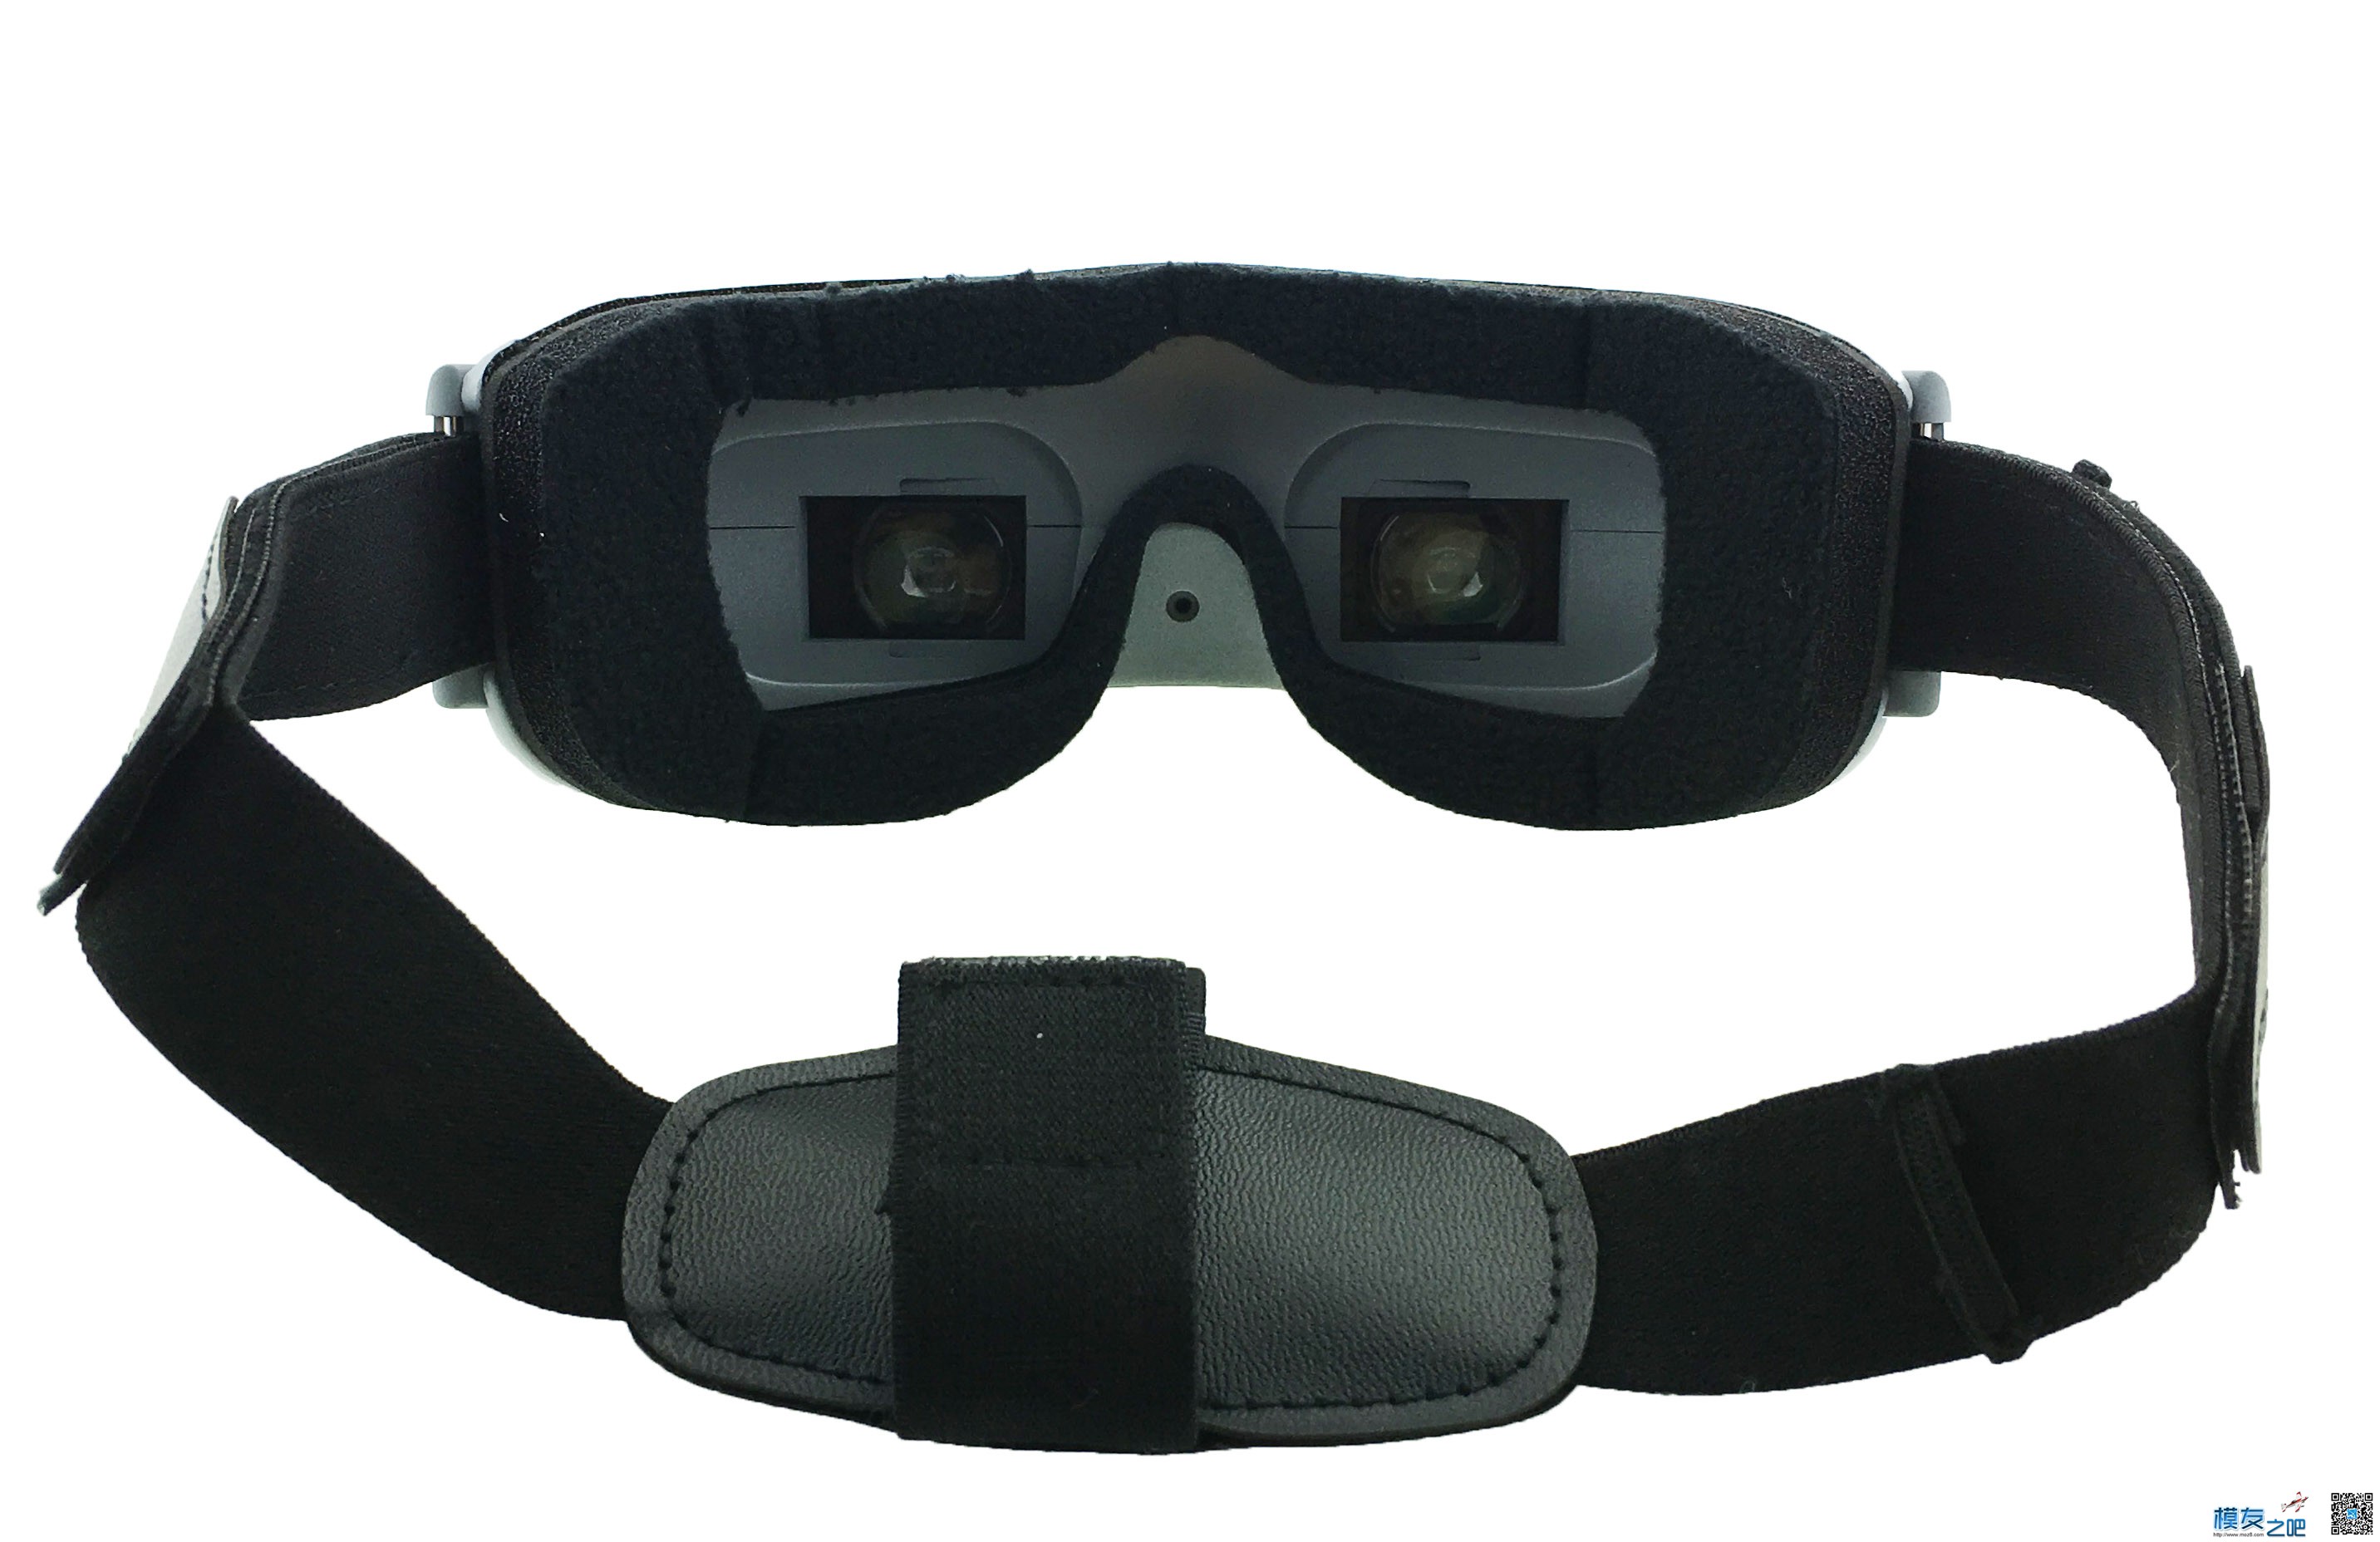 【新品】AOMWAY Commander 3D视频眼镜 FPV 神器开箱 新品,眼镜 作者:锦州二胖 7001 